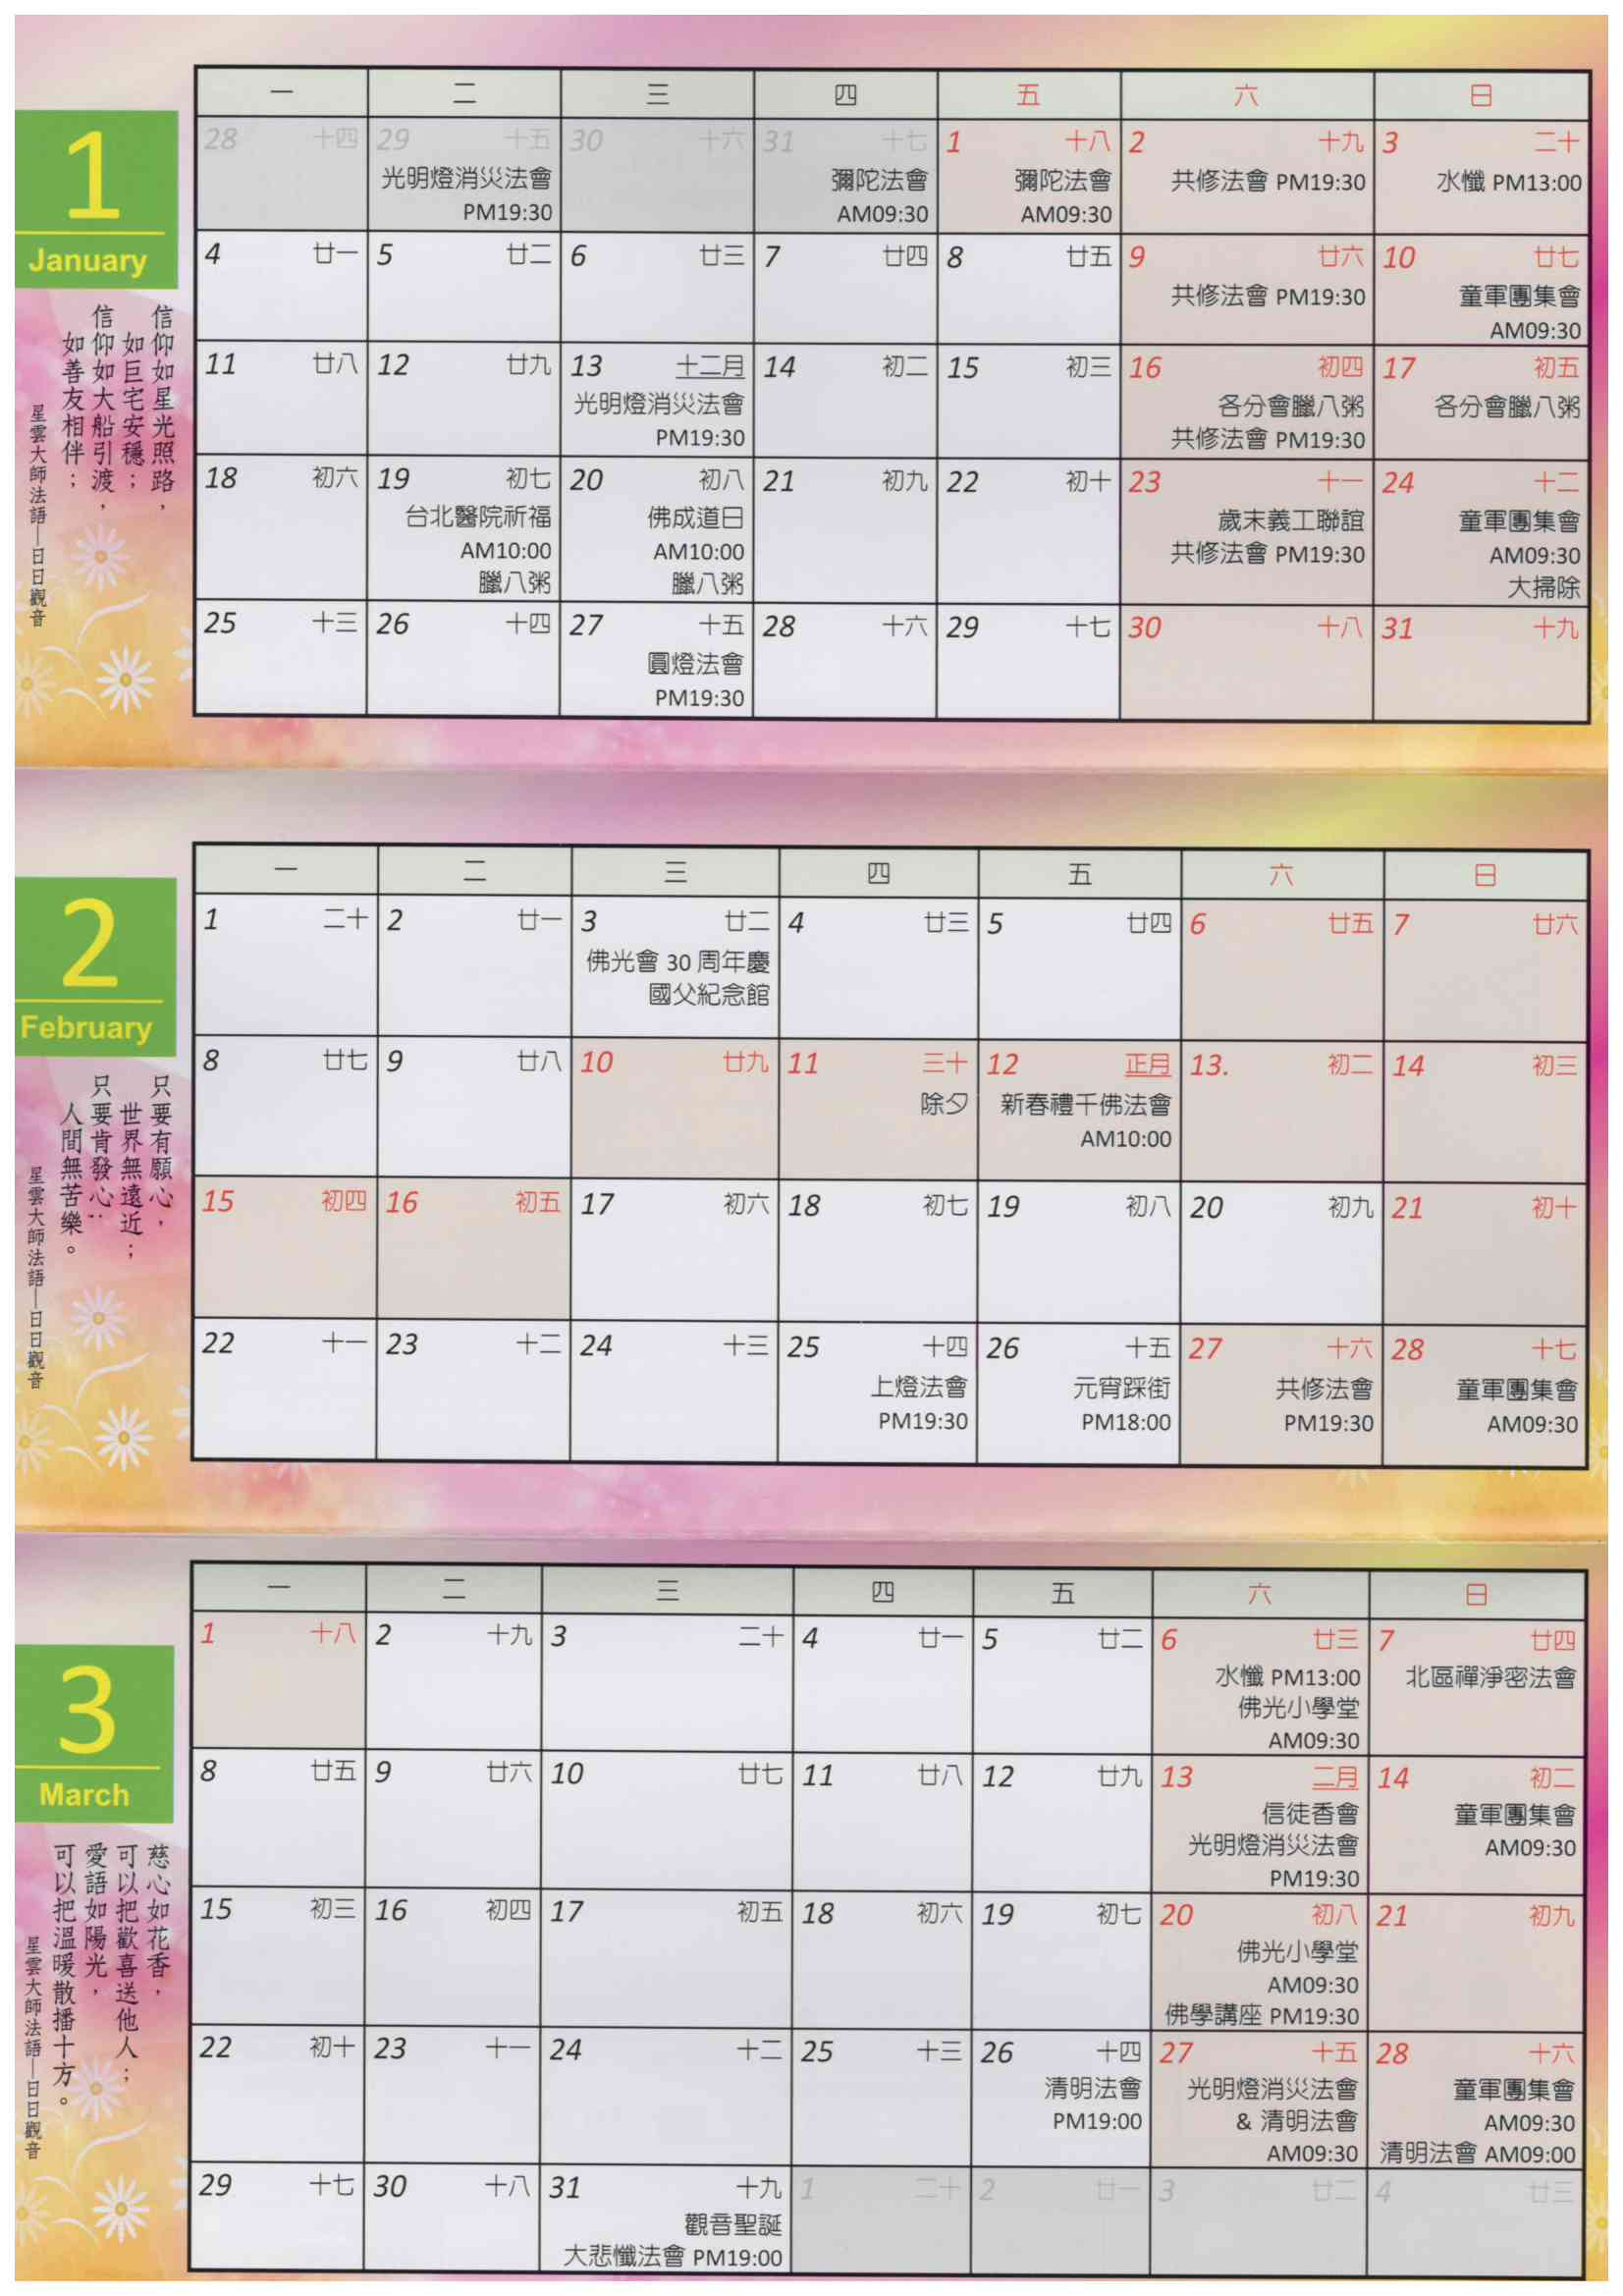 擇善寺-2021-1-3月行事曆.jpg